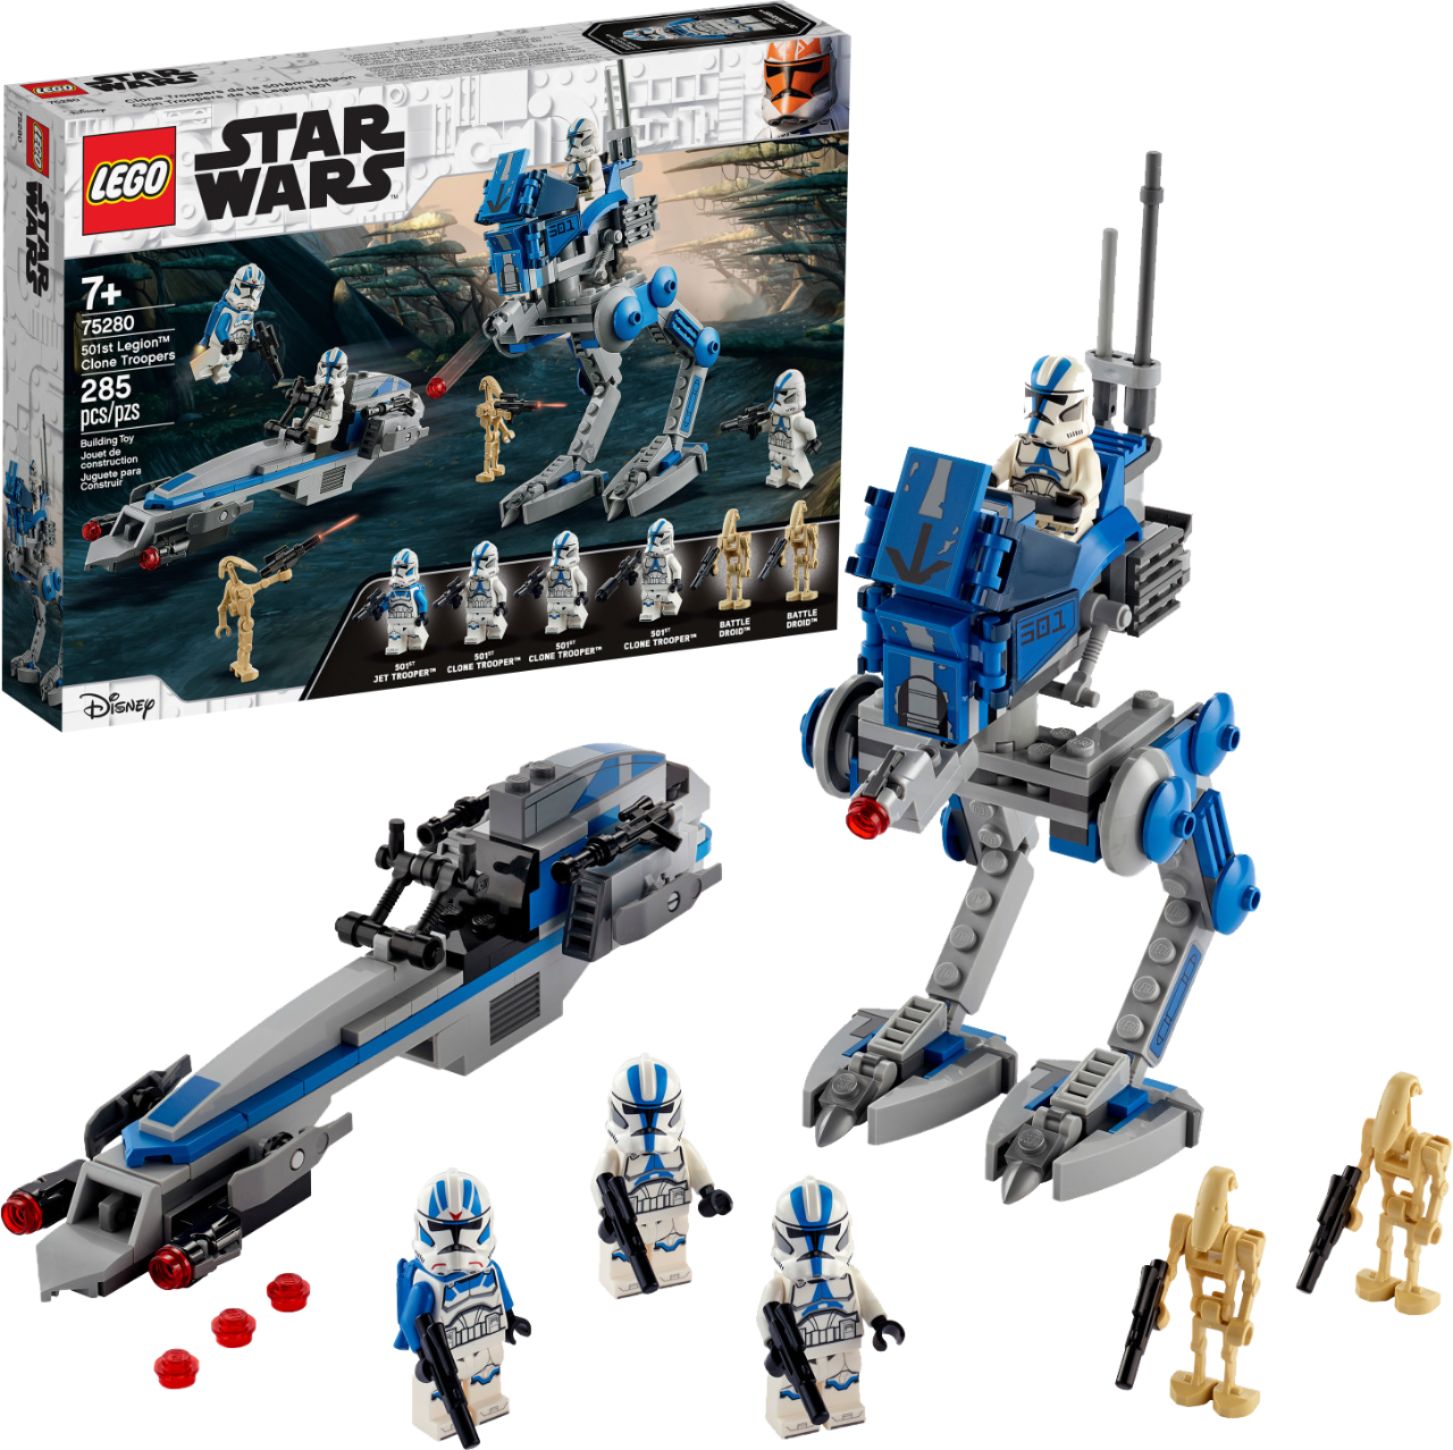 Comprar LEGO® Star Wars™: The Skywalker Saga Trooper Pack